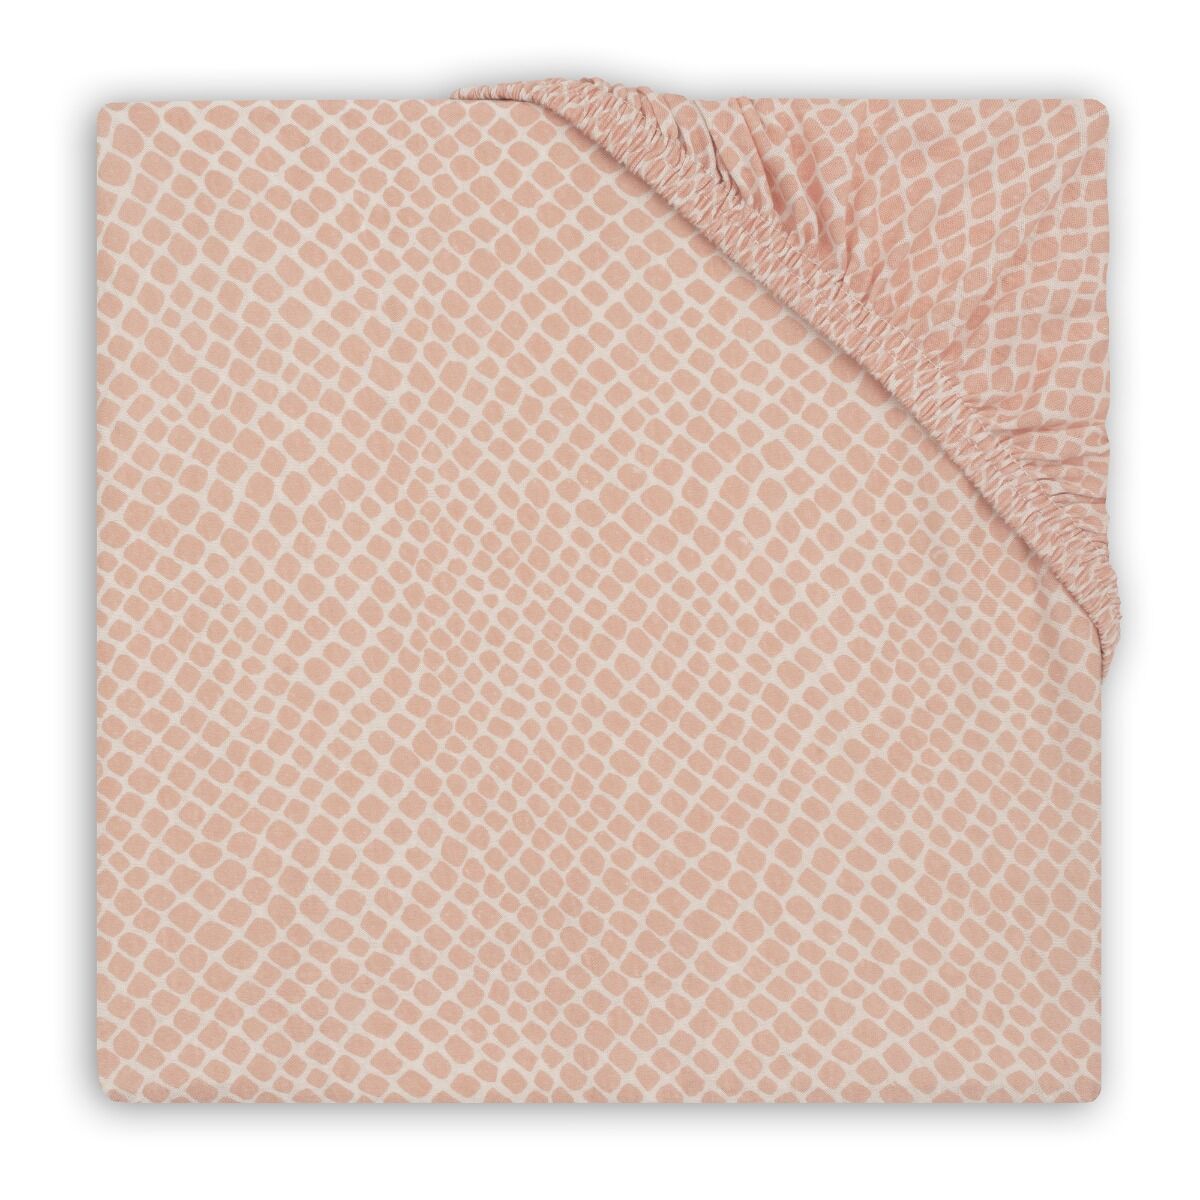 Jollein Hoeslaken Wieg 40/50 x 80/90 cm Snake Pale Pink online kopen